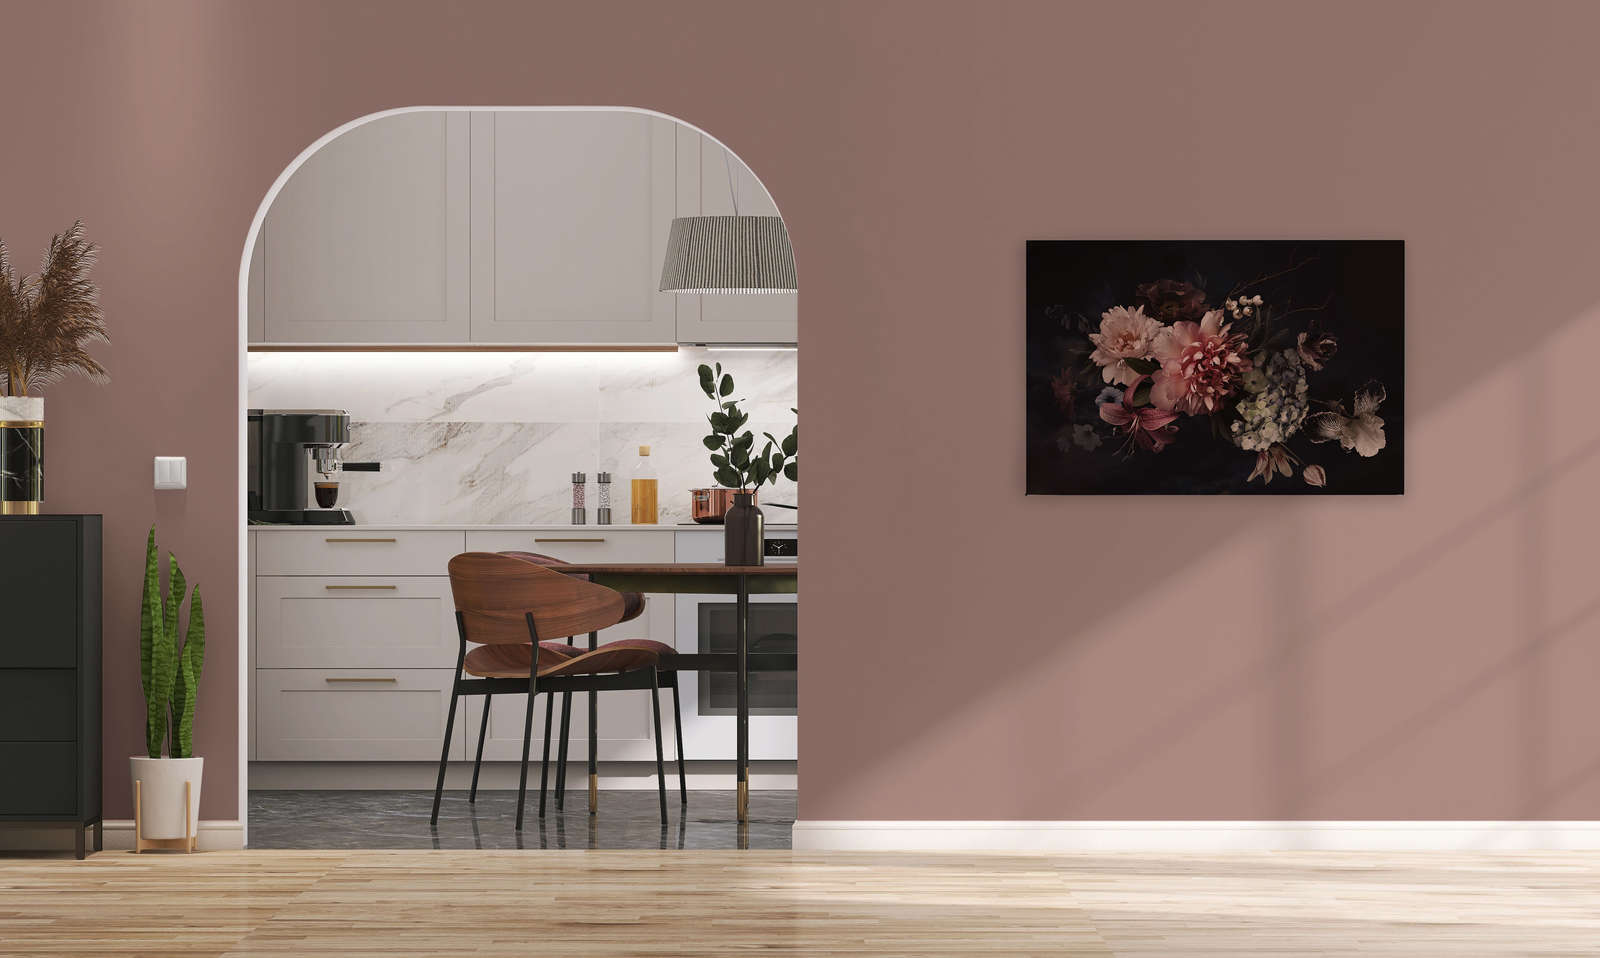             Canvas met boeket in botanische stijl | roze, zwart - 0,90 m x 0,60 m
        